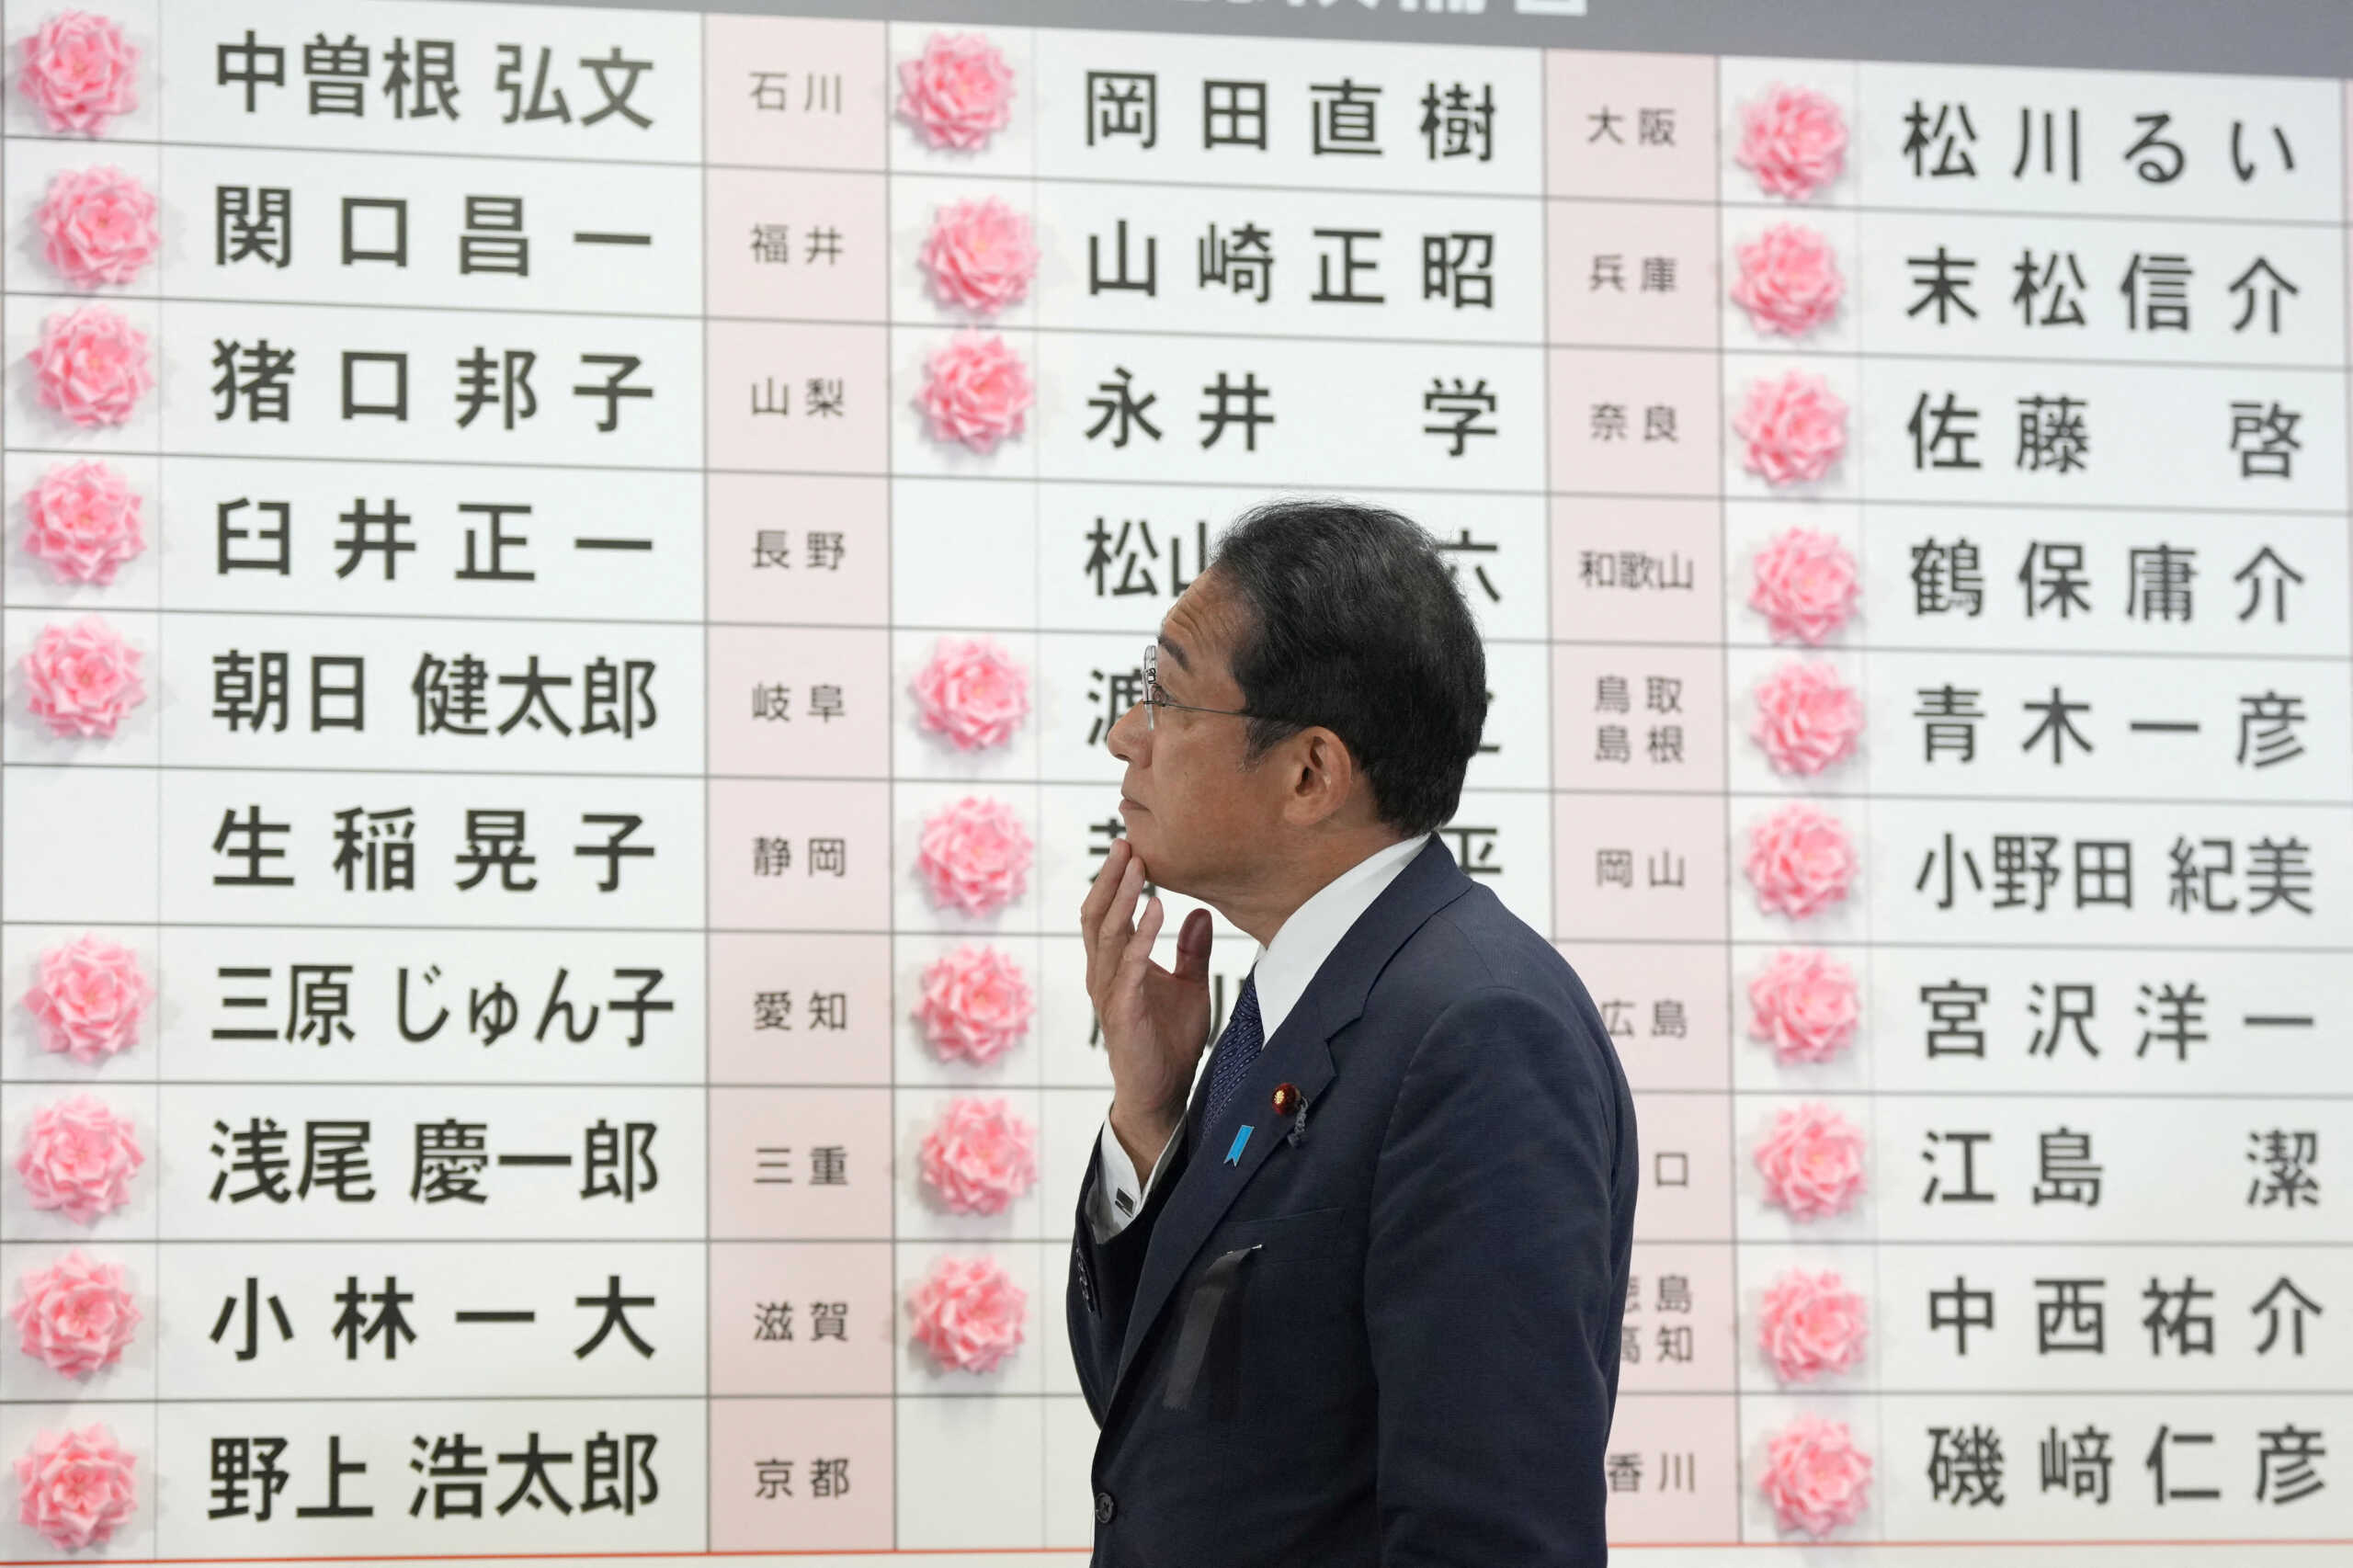 Ιαπωνία: Εκλογική νίκη για το κυβερνών κόμμα στη σκιά της δολοφονίας του Σίνζο Άμπε